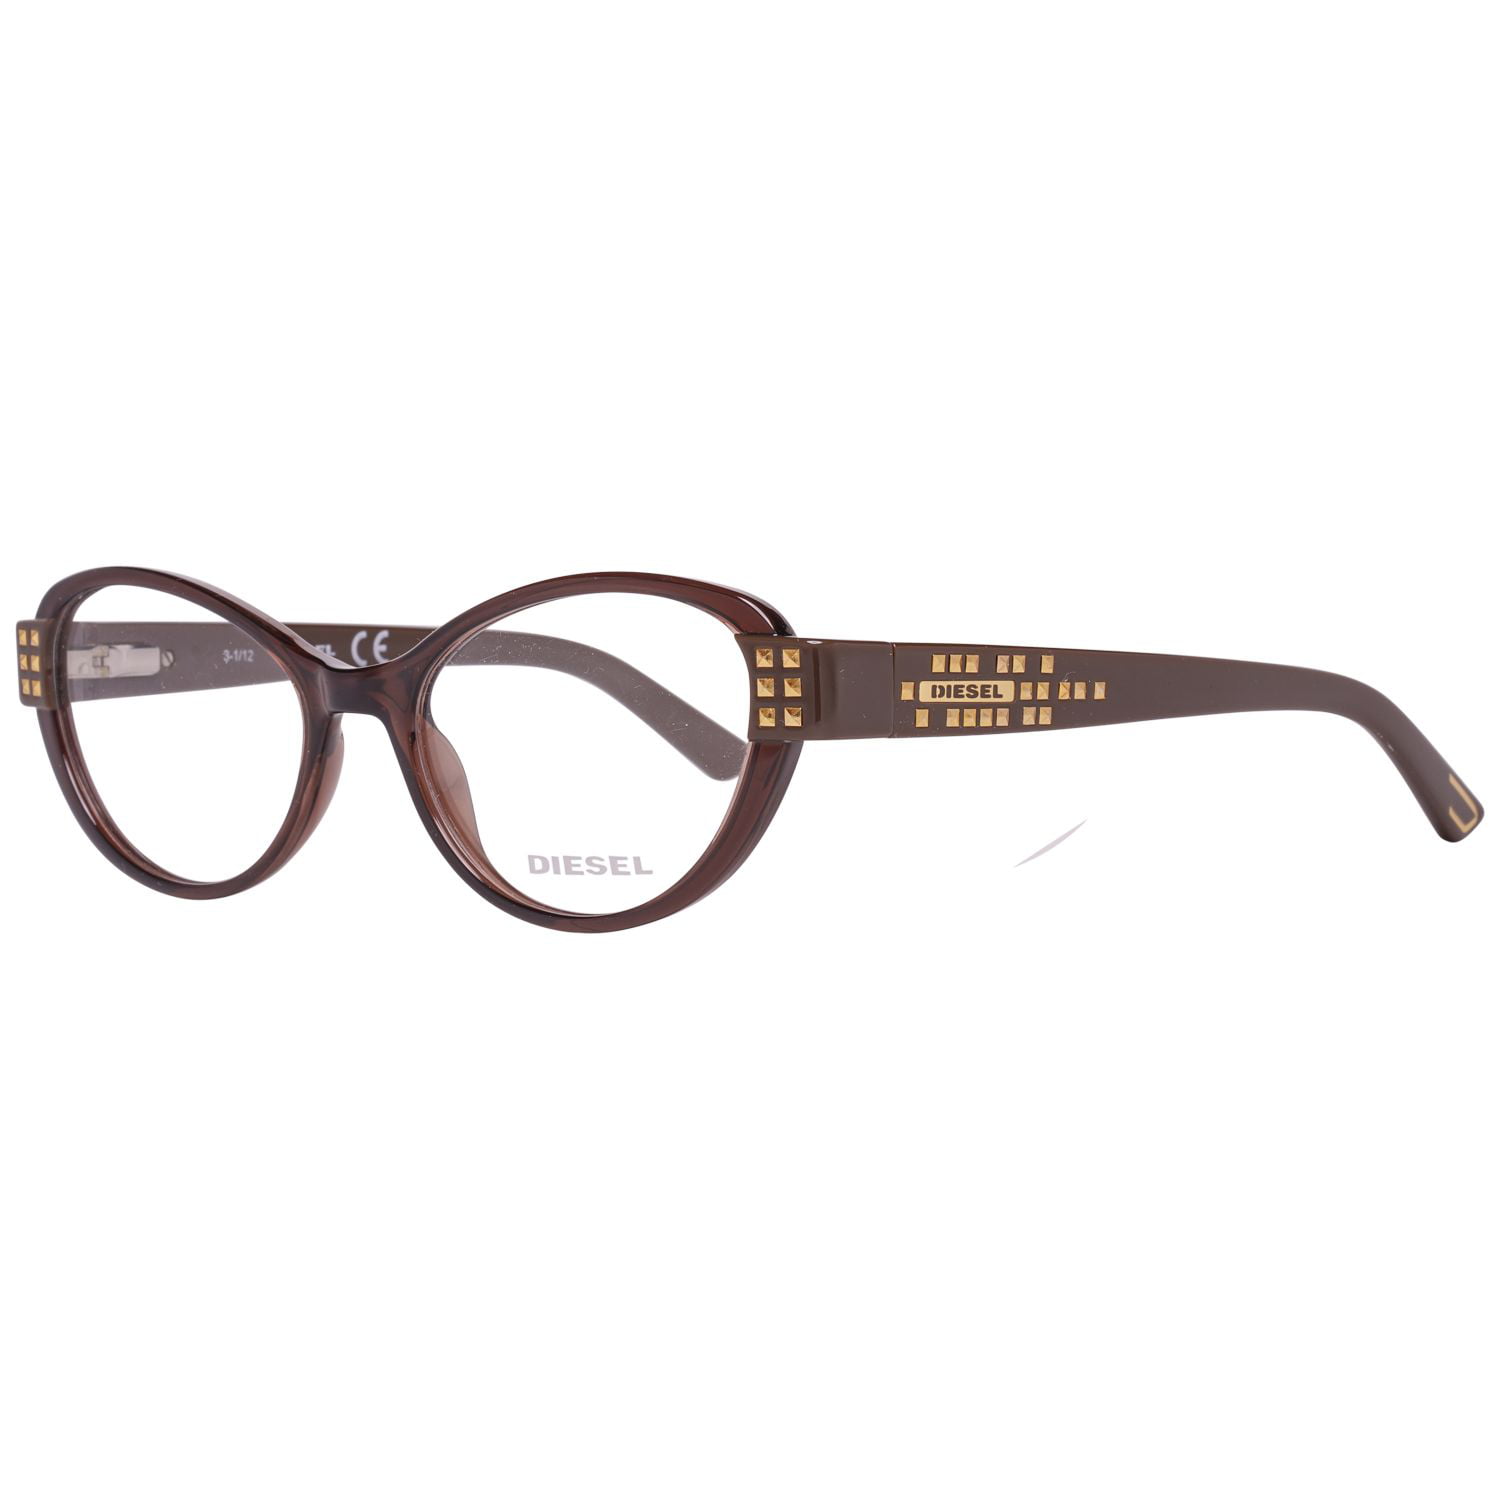 Eyeglasses Frame Diesel Brown Women Dl5011 048 51 Walmart Canada 